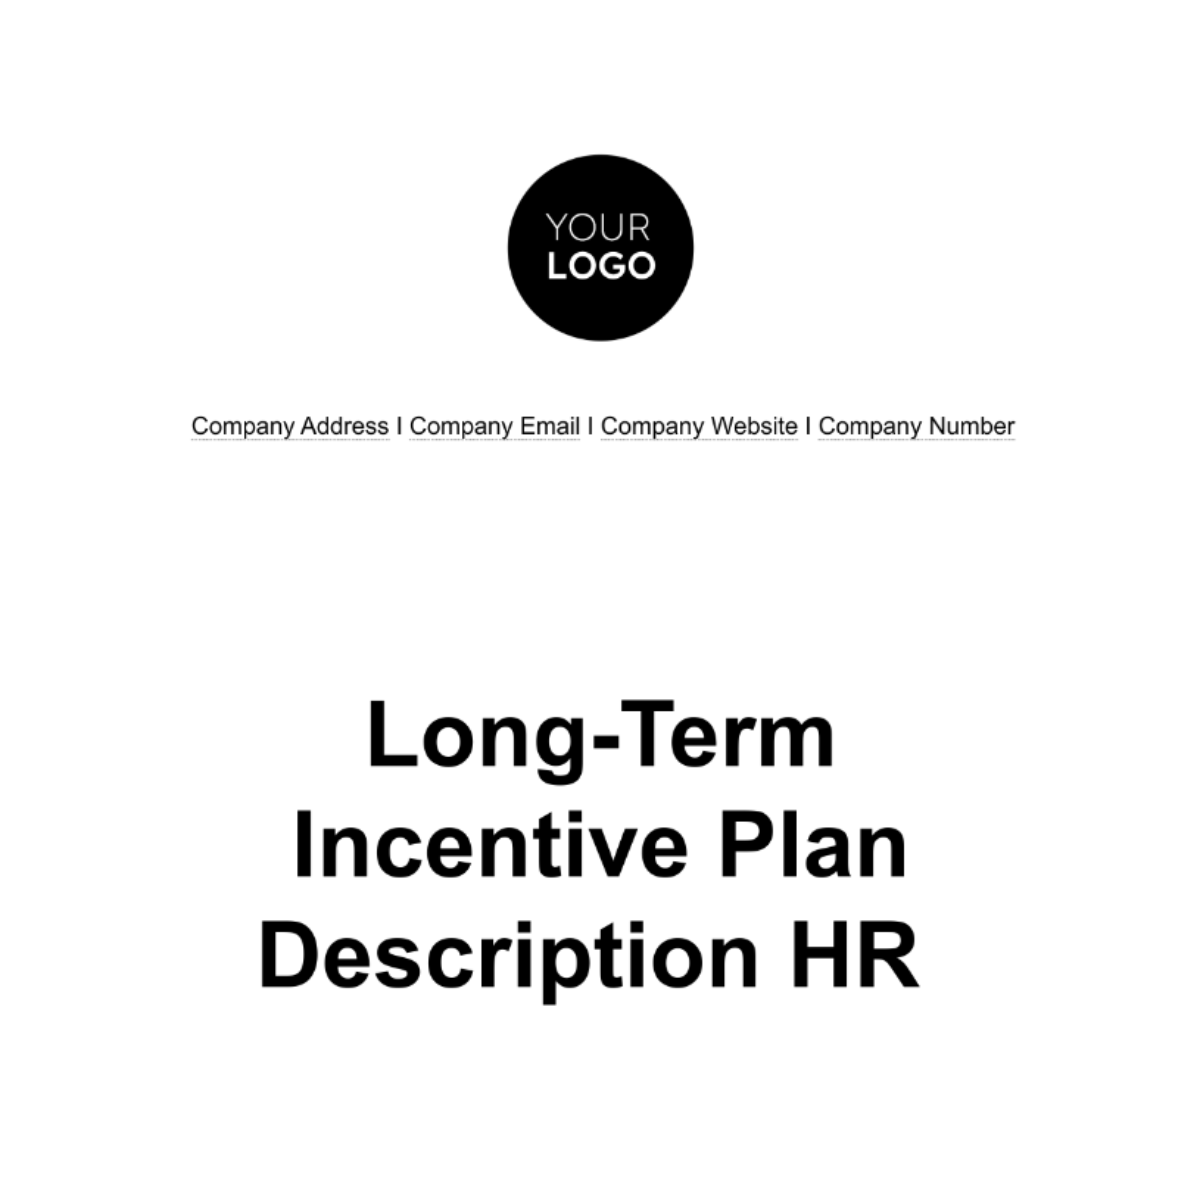 Free Long-Term Incentive Plan Description HR Template